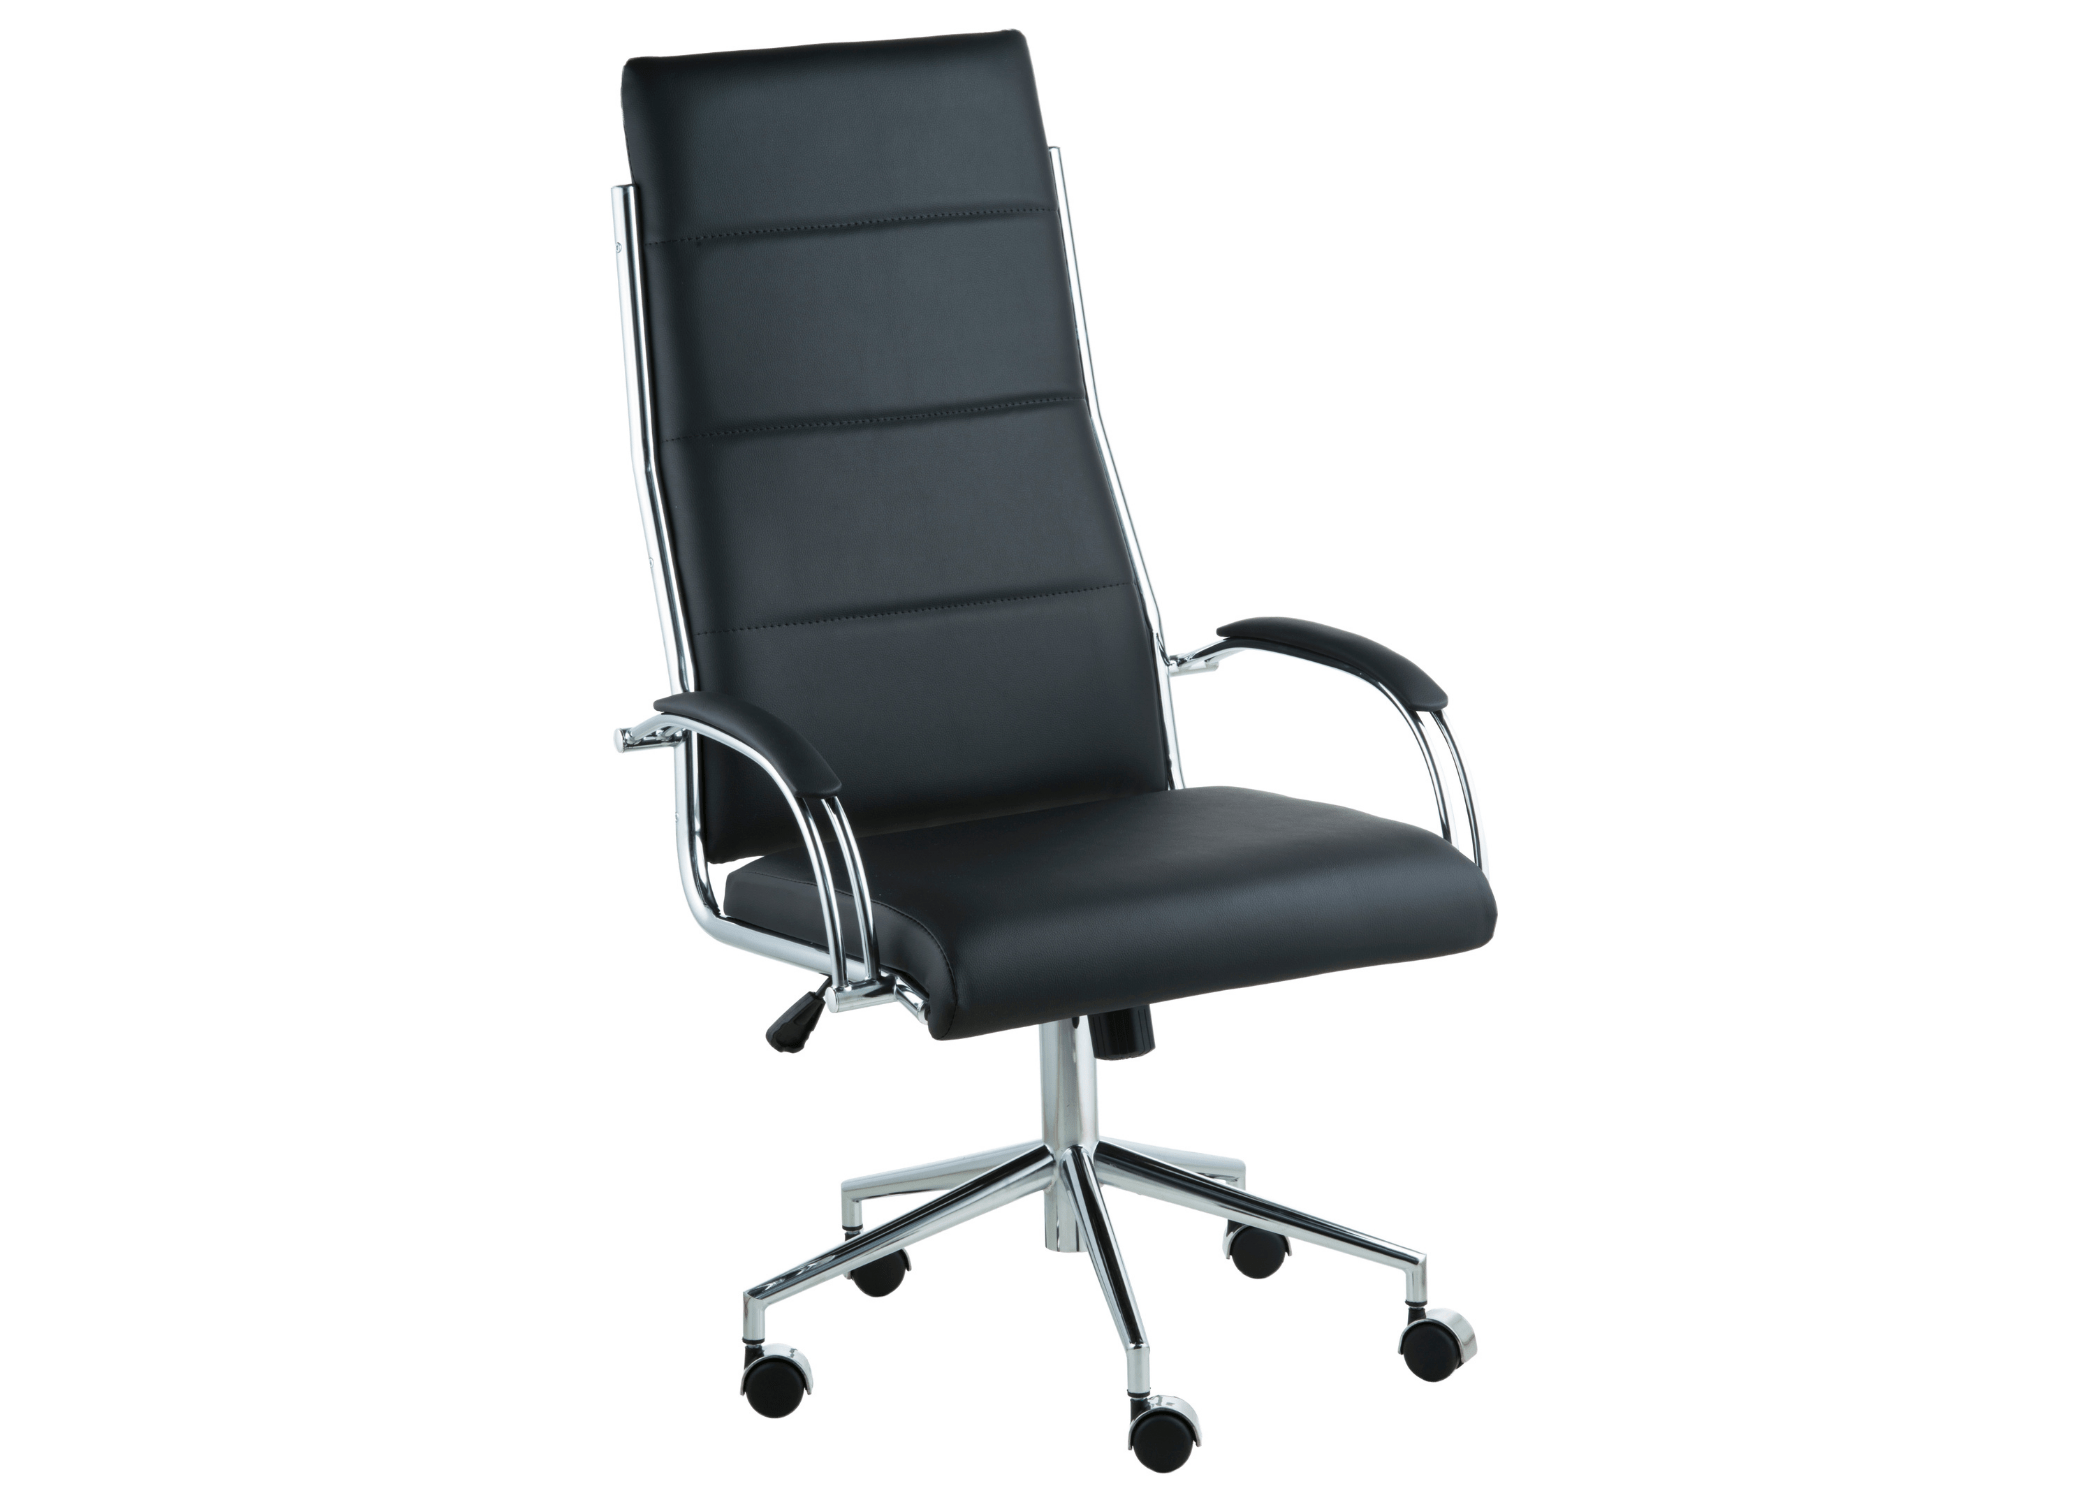 Sofisticação e funcionalidade: Cadeira Portugal II, onde o design contemporâneo encontra o conforto ergonômico.